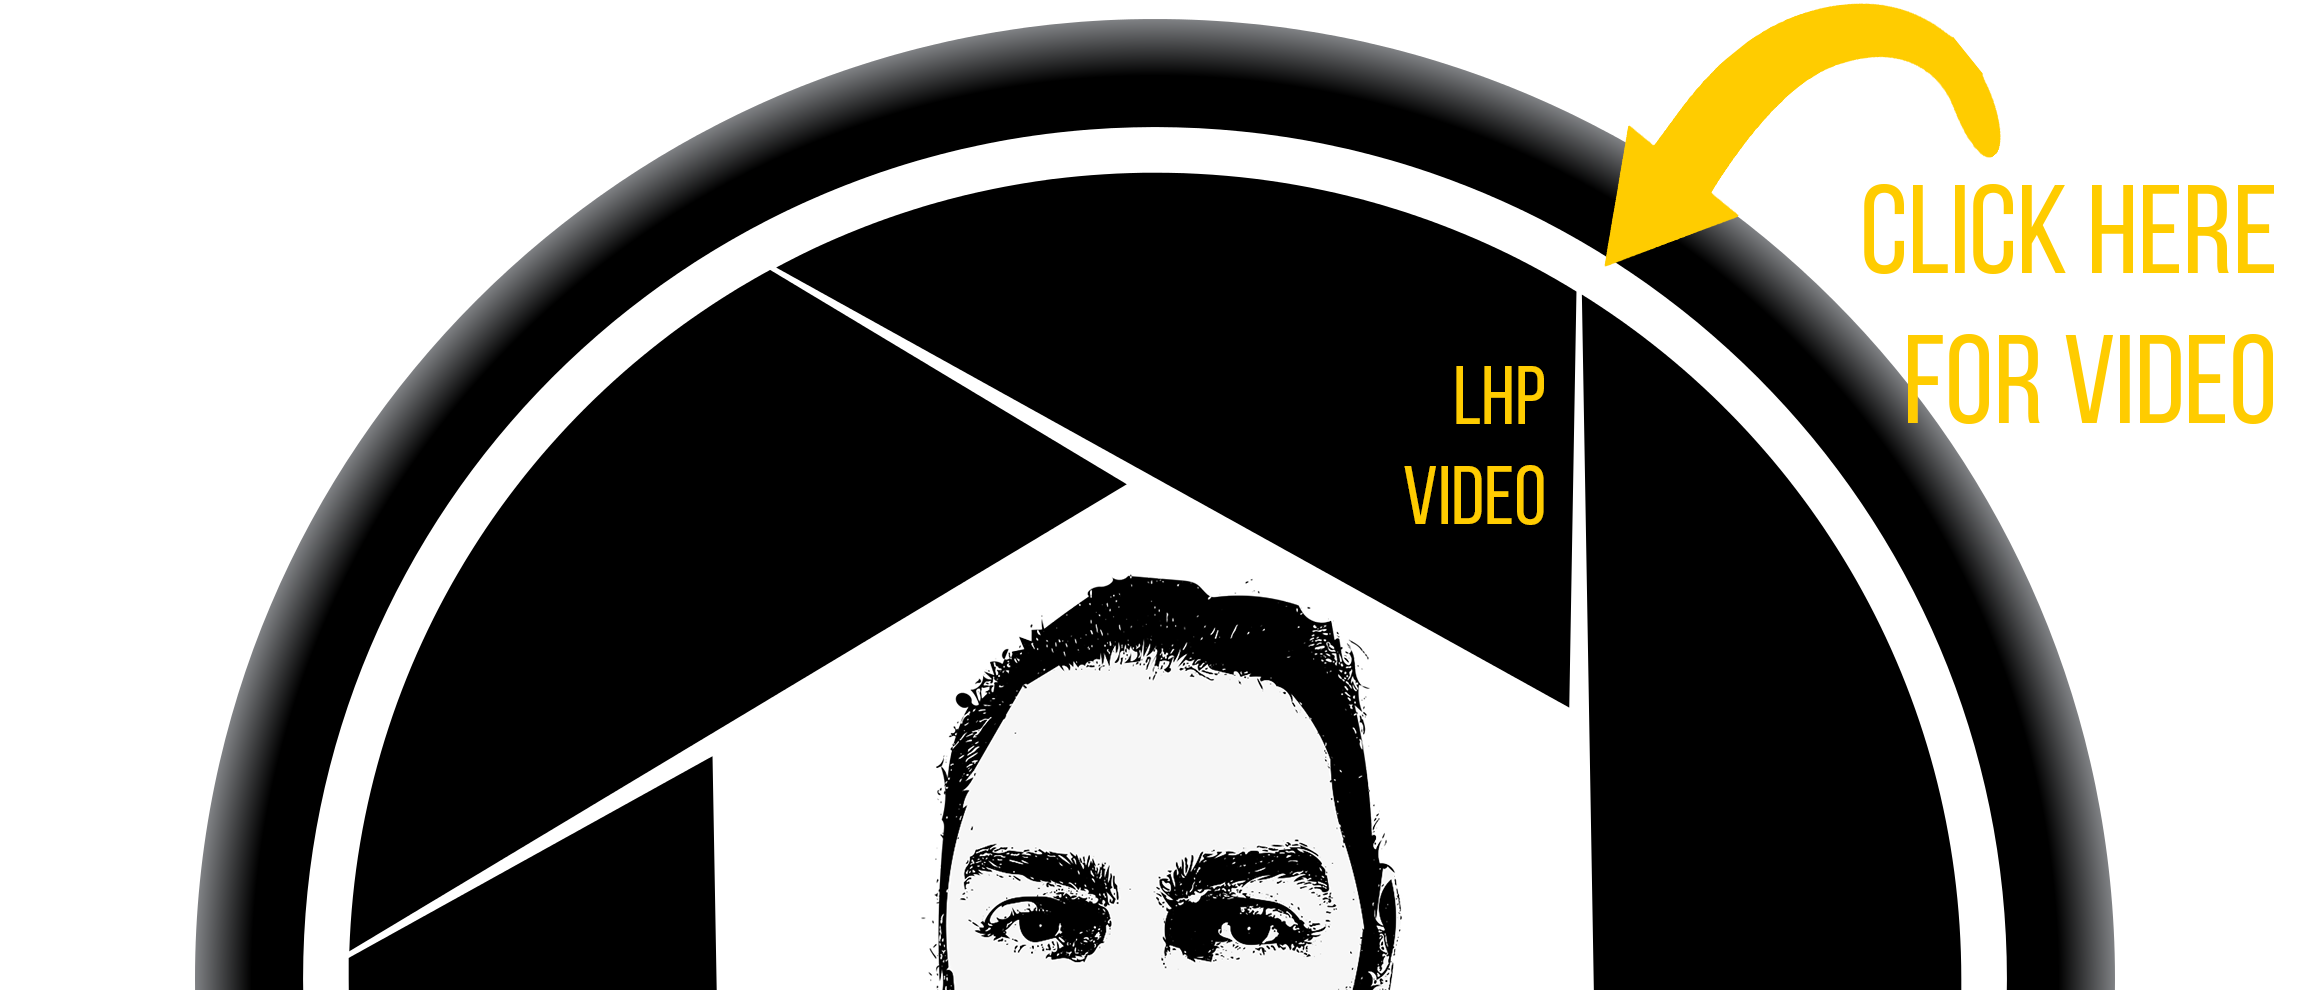 LHP Video Button